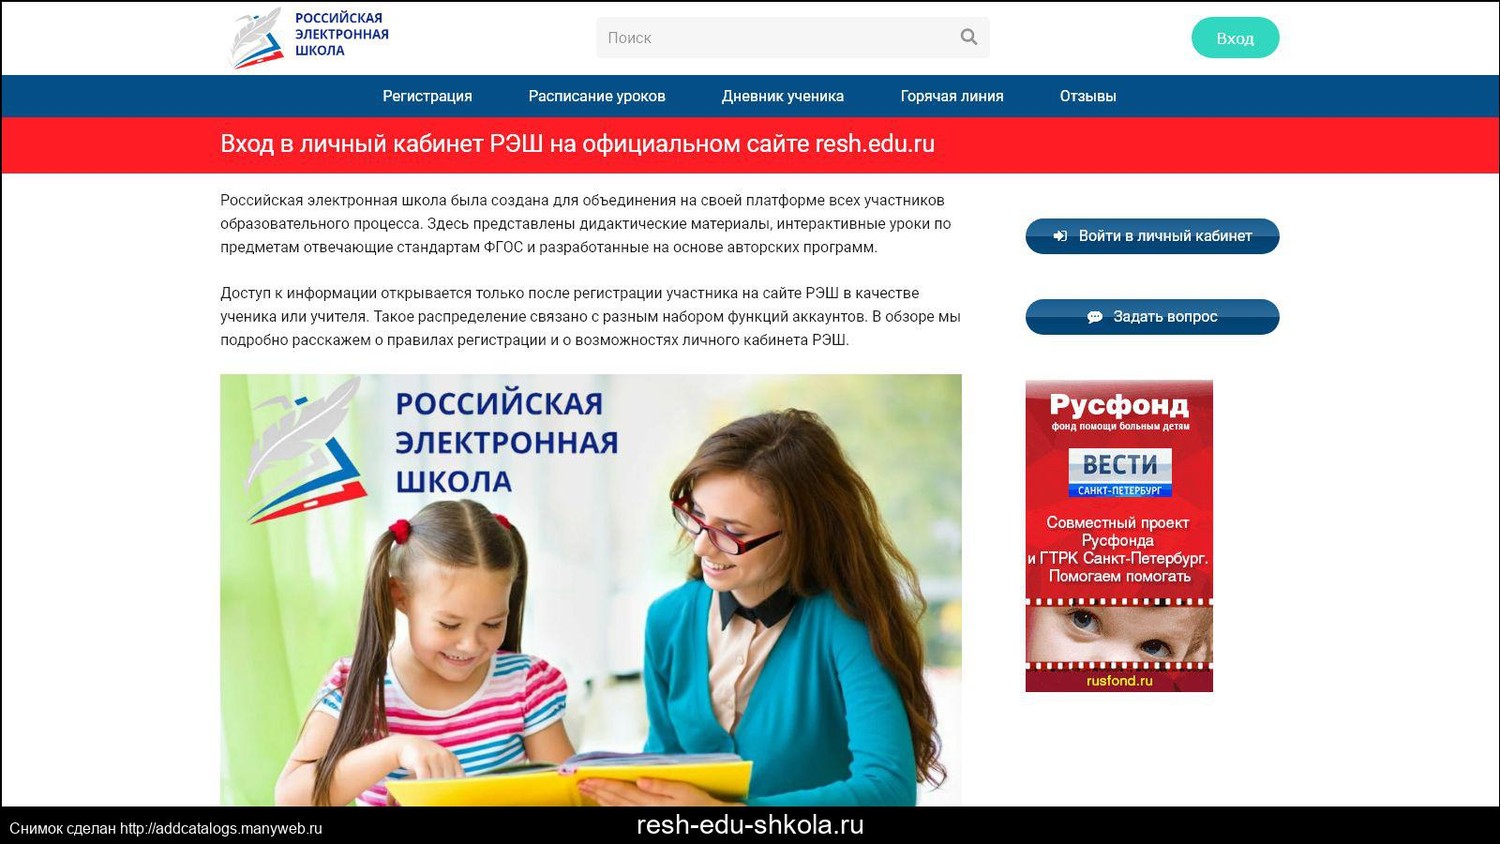 Электронная школа 64 школы. Российская электронная школа вход.